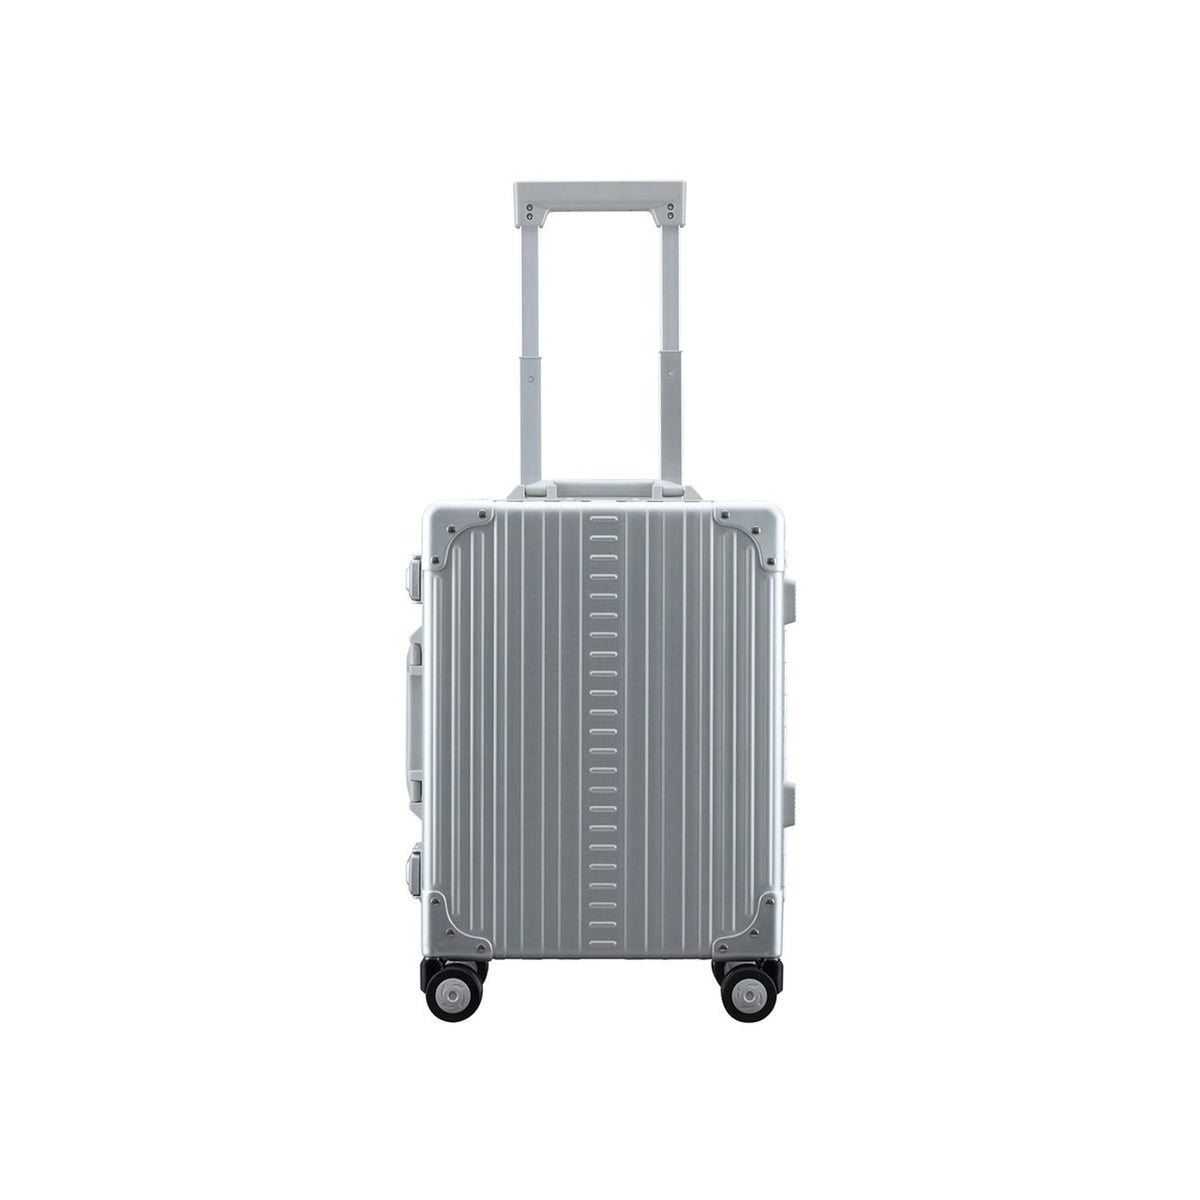 Aleon 19" Aluminum Hardside International Carry-On Luggage